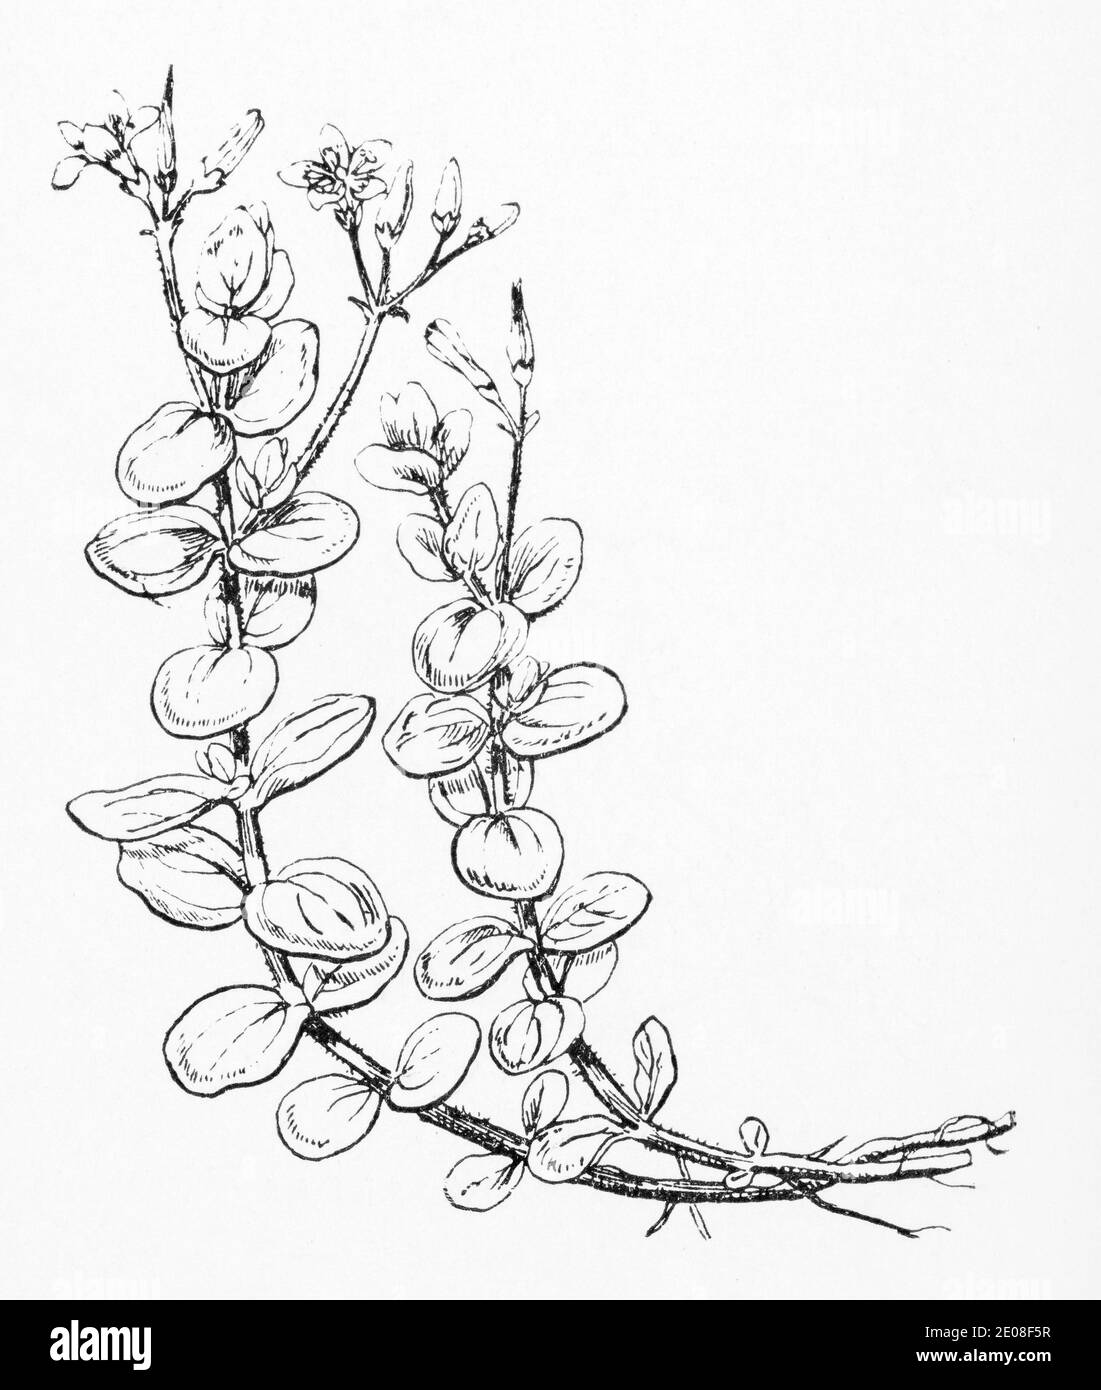 Ancienne gravure d'illustration botanique de Marsh St. Johns Wort / Hypericum elodes. Voir Remarques Banque D'Images